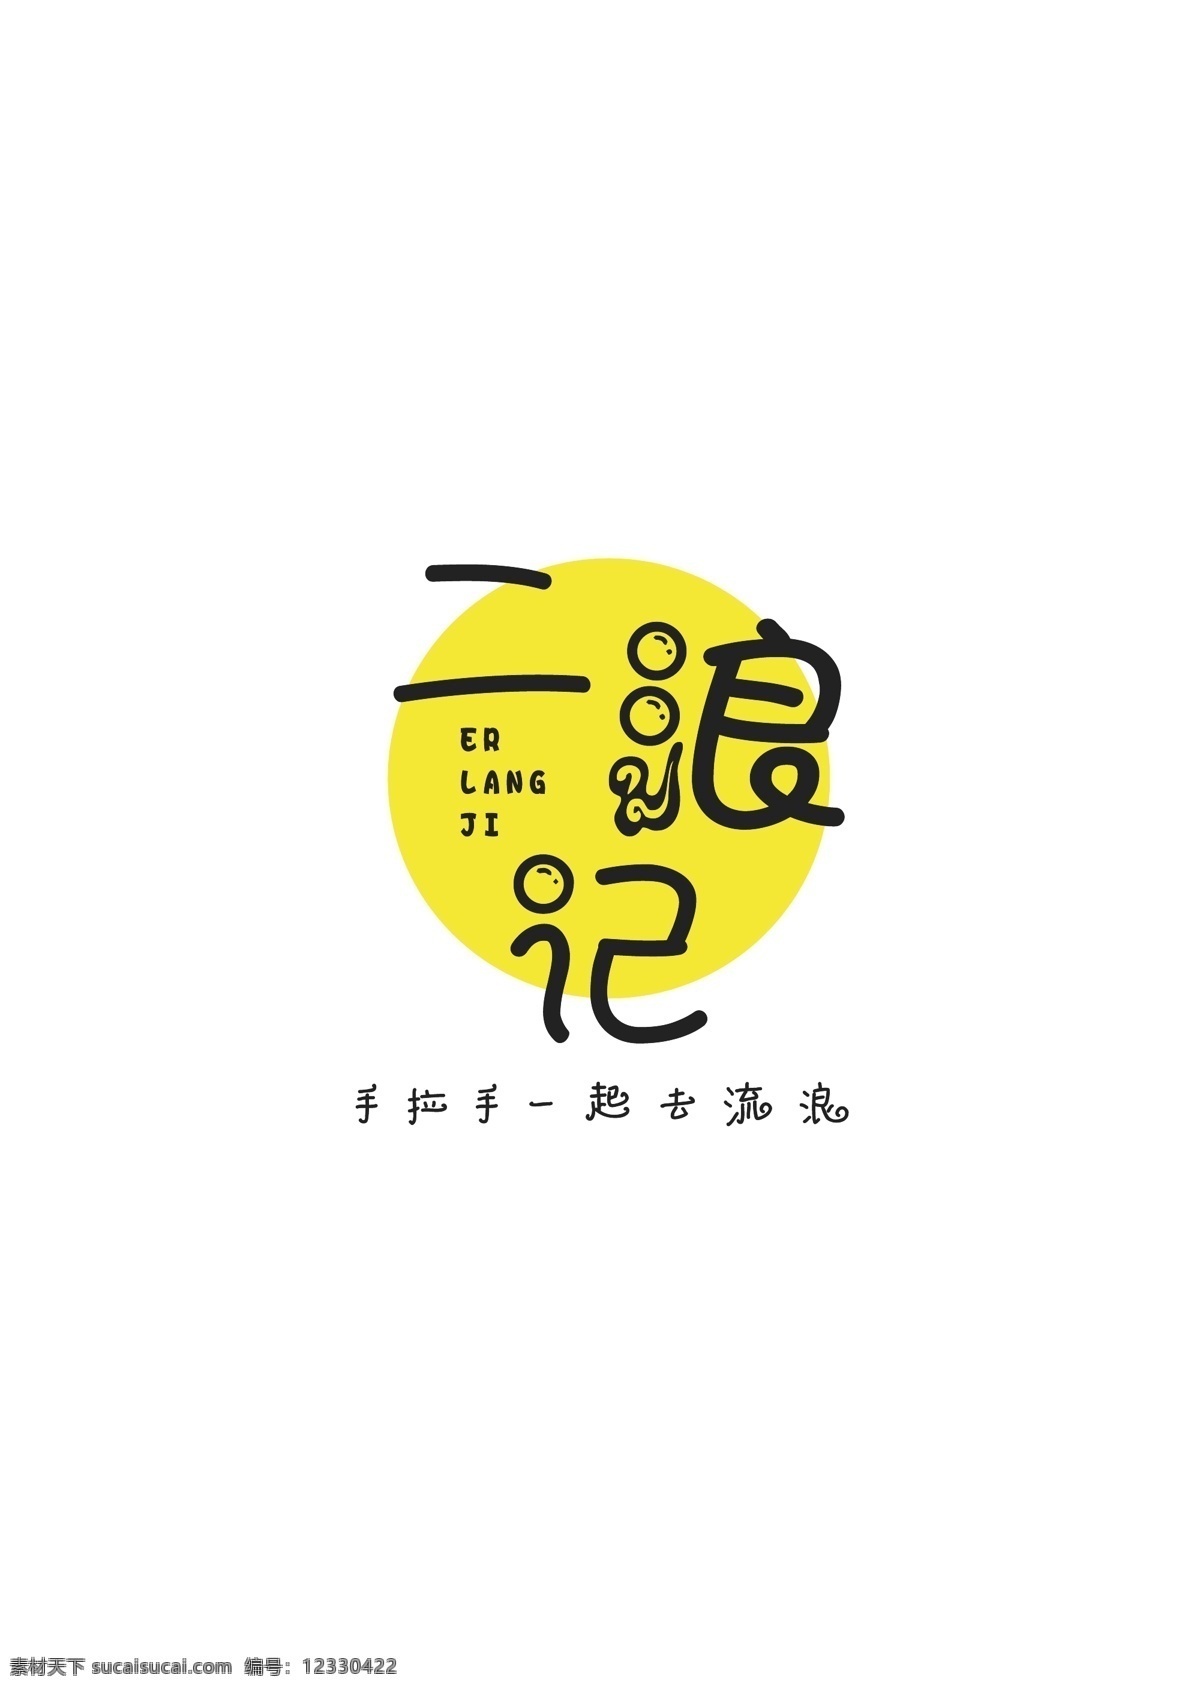 旅行 媒体 logo 旅行logo ai矢量 logo设计 标识设计